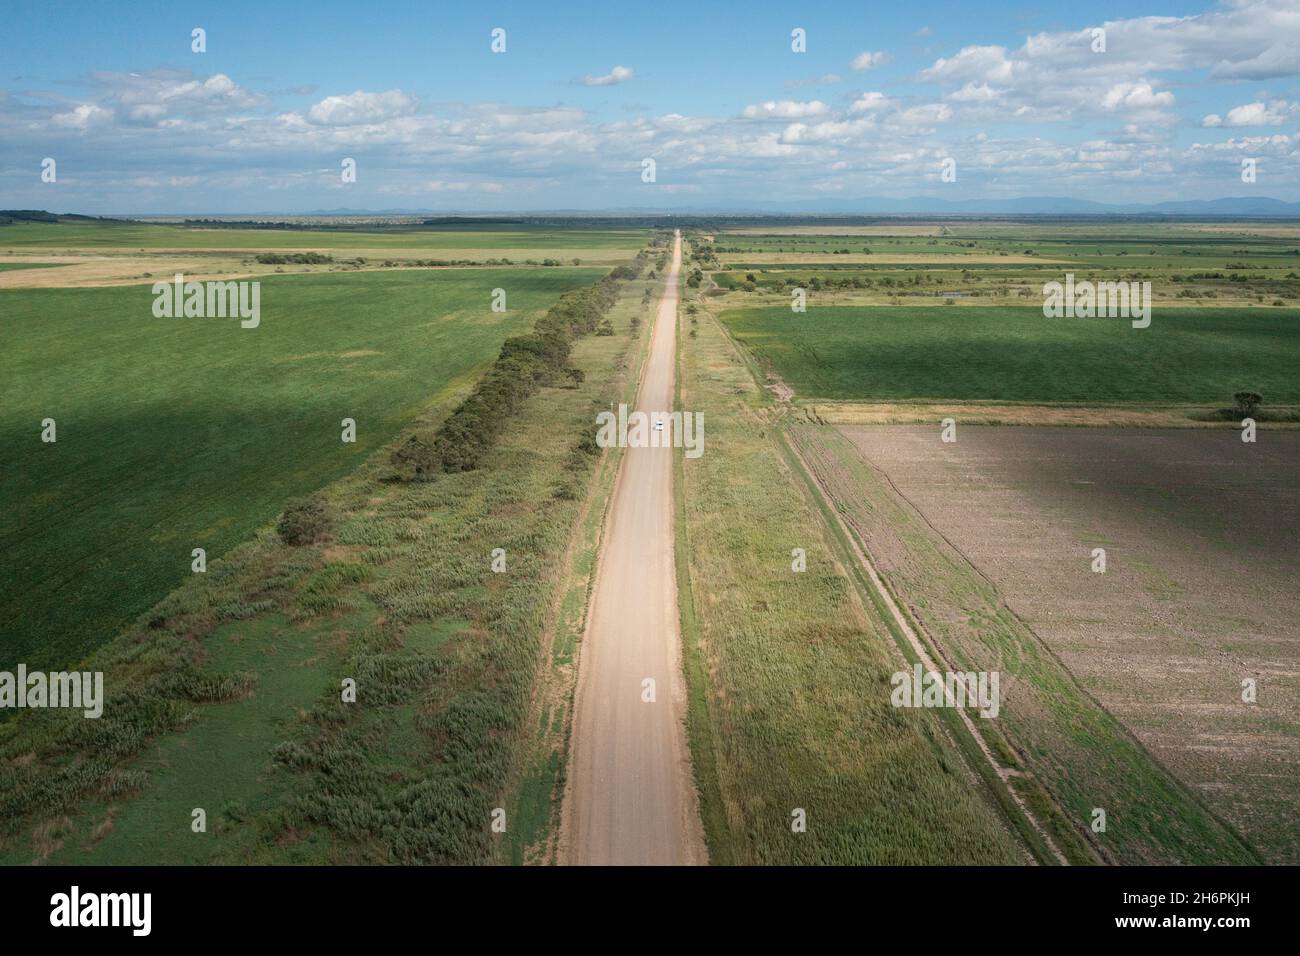 Eine Landstraße zwischen den Feldern, die sich bis in die Ferne erstreckt, fährt ein Auto entlang. Stockfoto